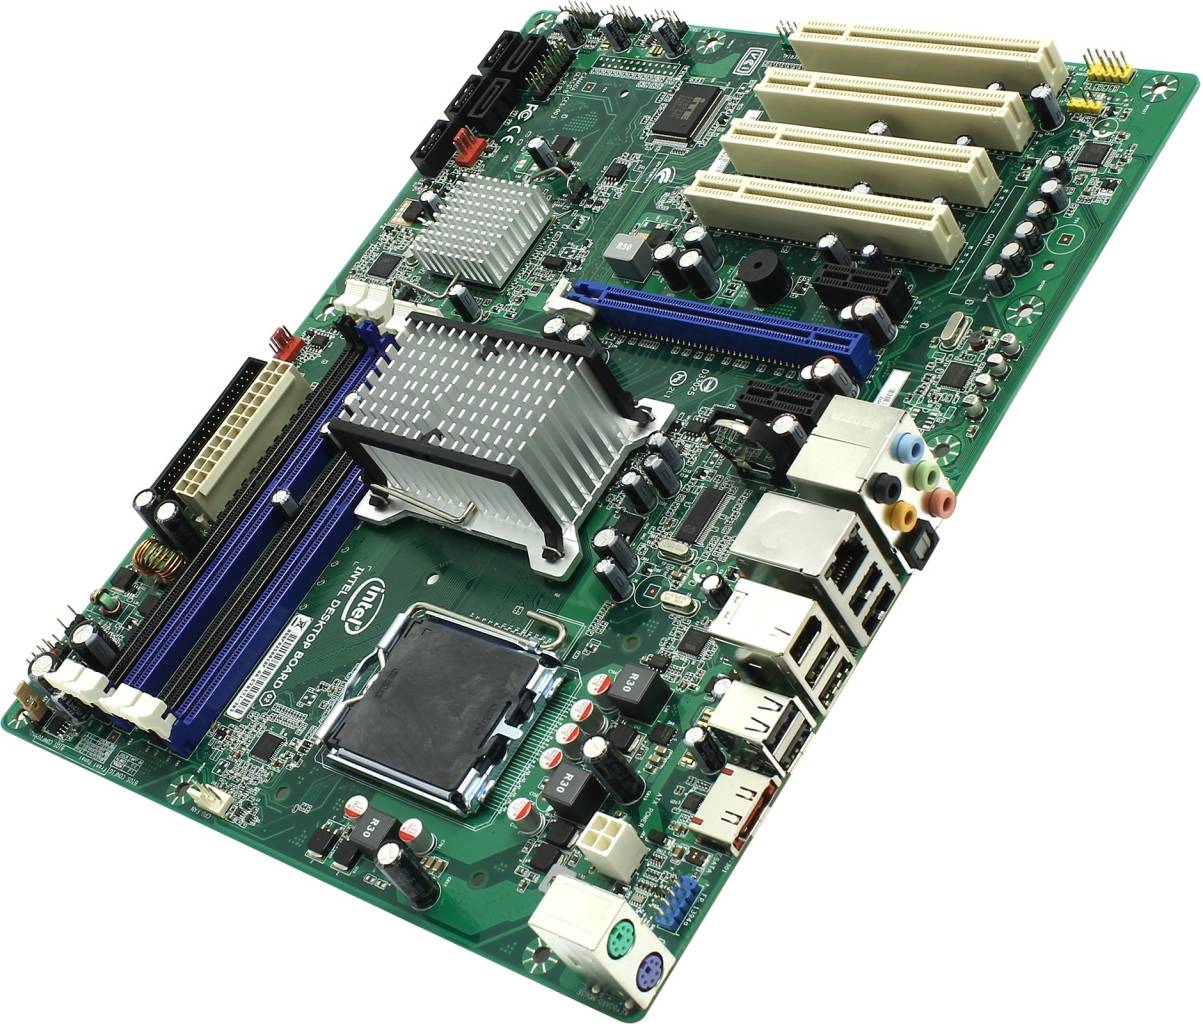    LGA775 INTEL DP43BF (OEM) [P43] PCI-E+GbLAN+1394 SATA RAID ATX 4DDR-III